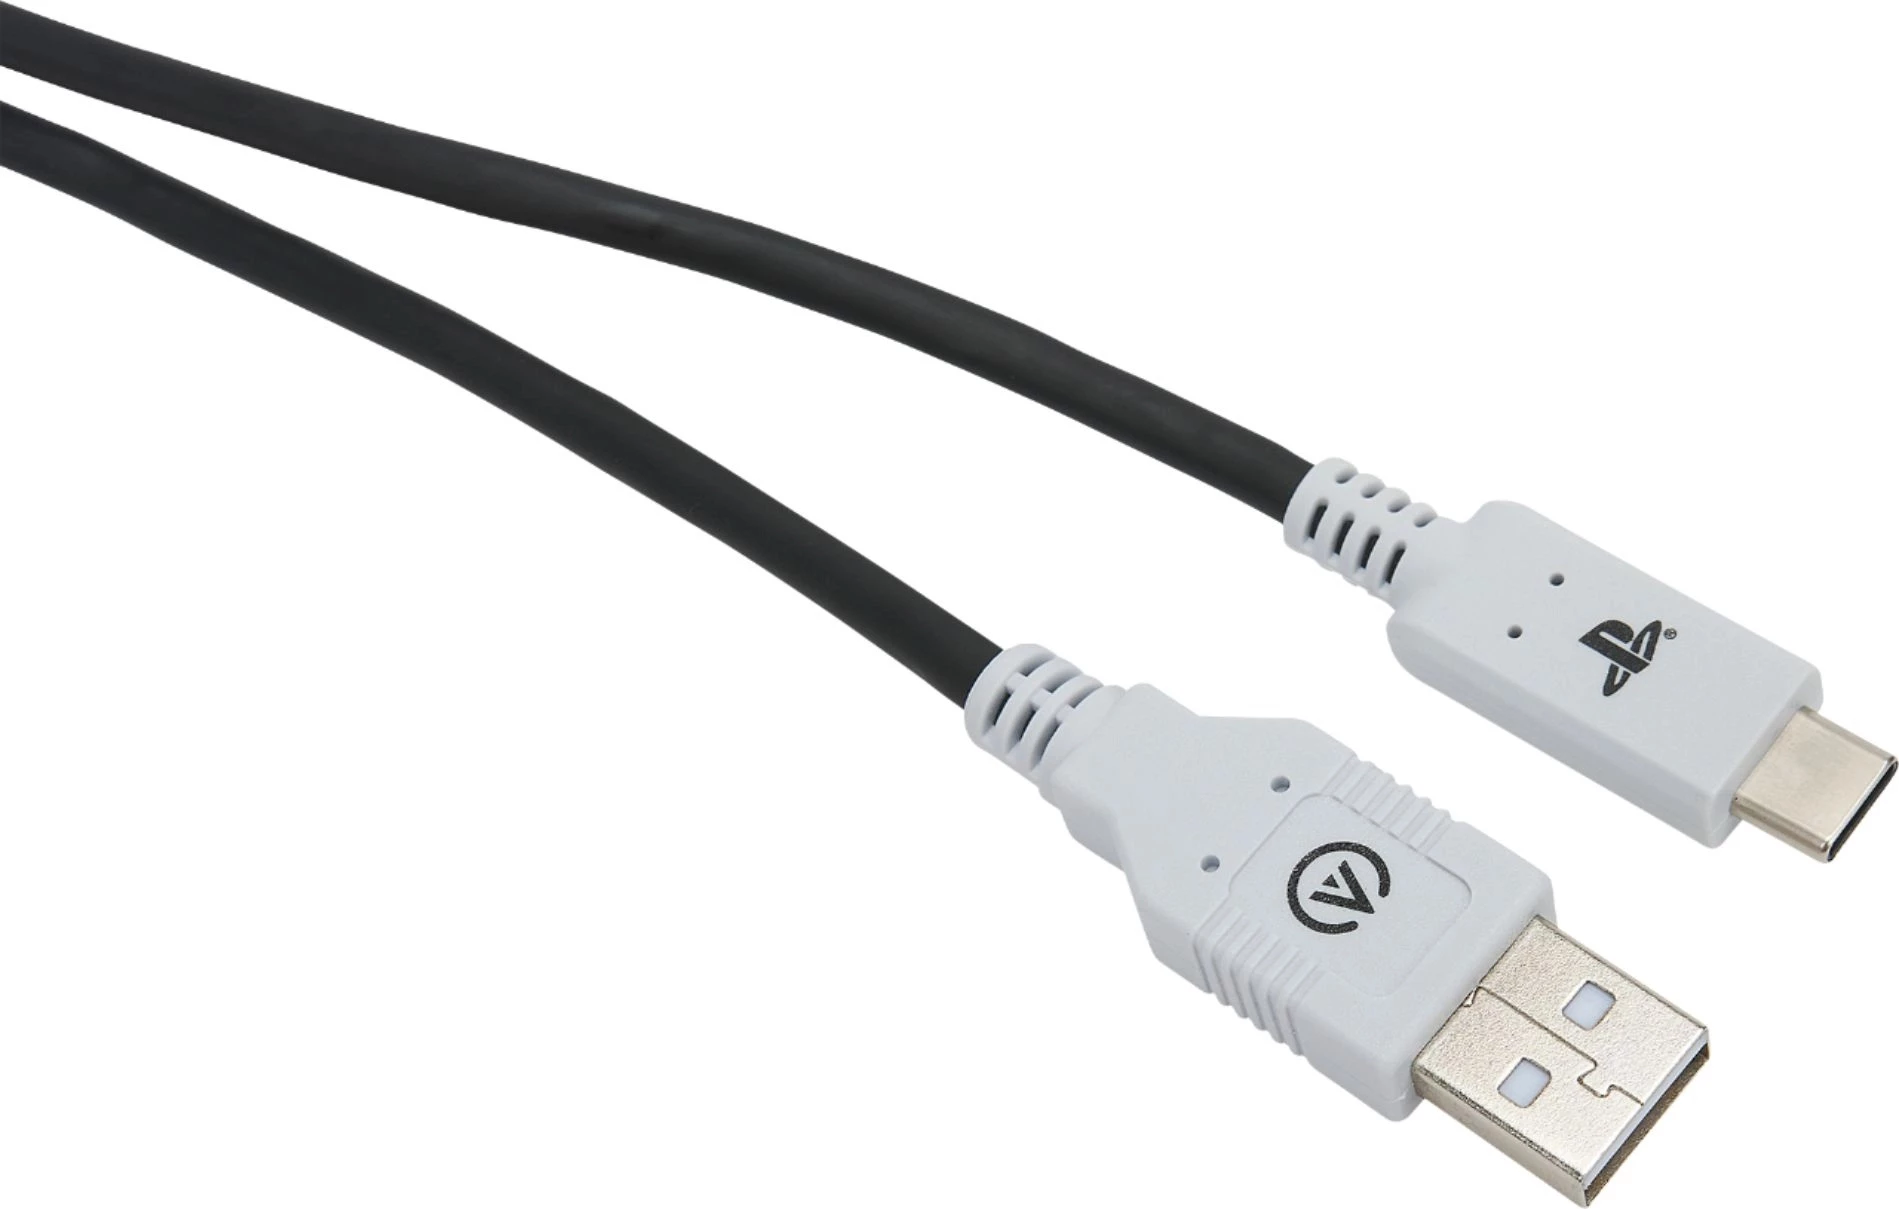 PowerA USB-C Charge Cable voor de PlayStation 5 kopen op nedgame.nl